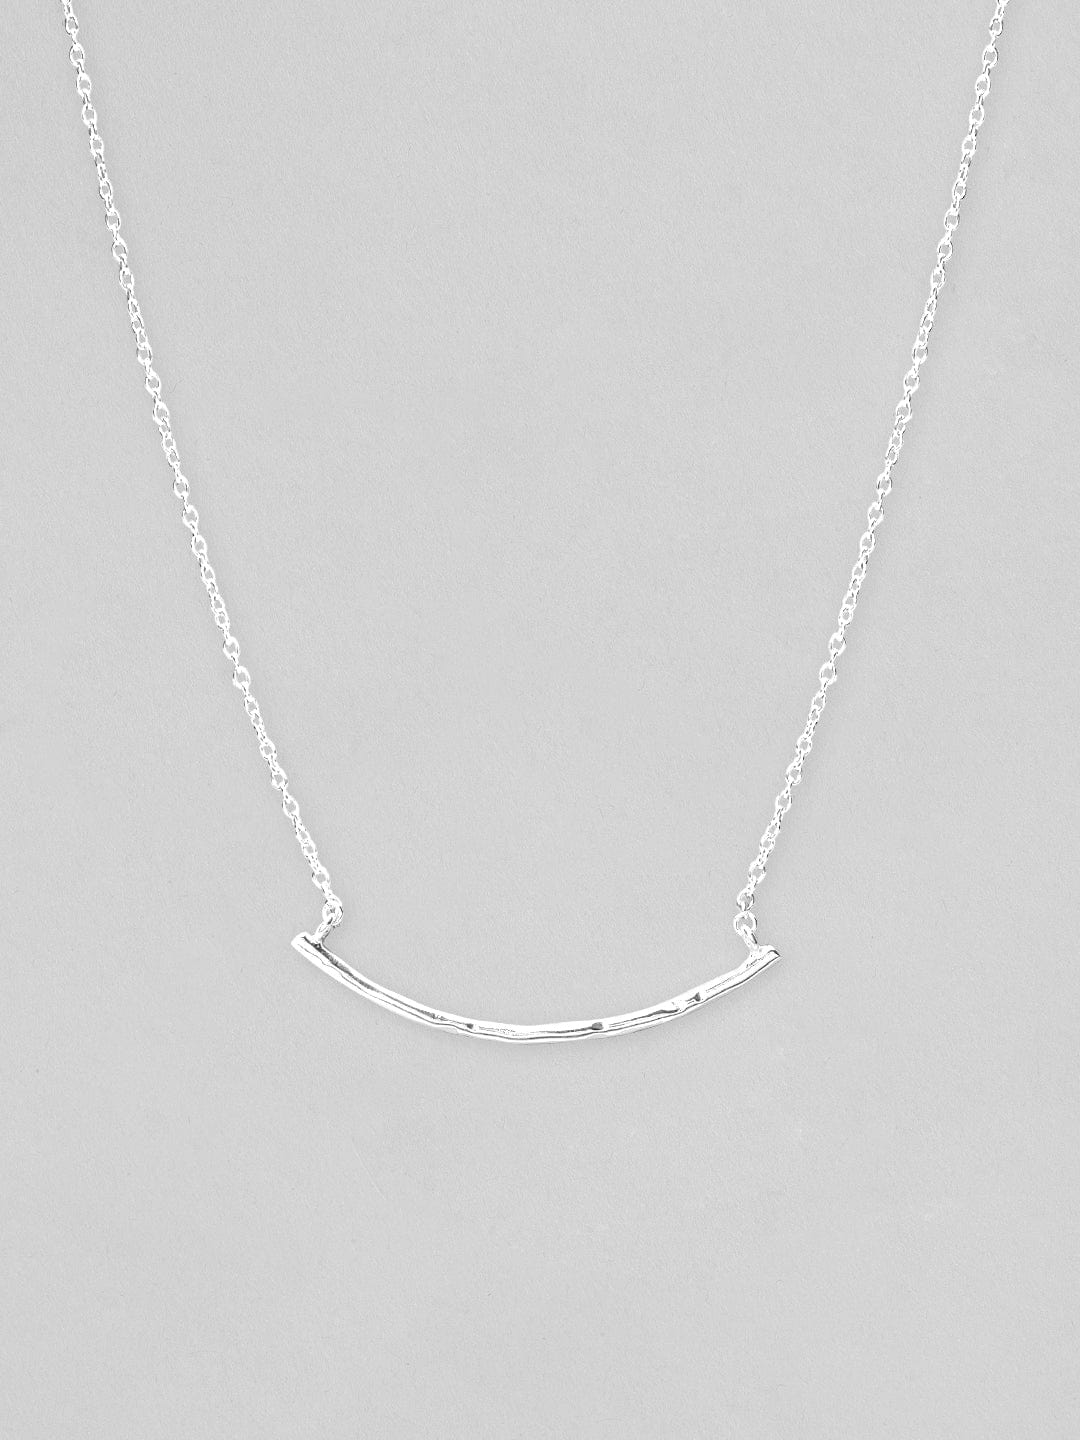 Rubans 925 Silver The Celestial Curve Pendant Necklace Chain & Necklaces